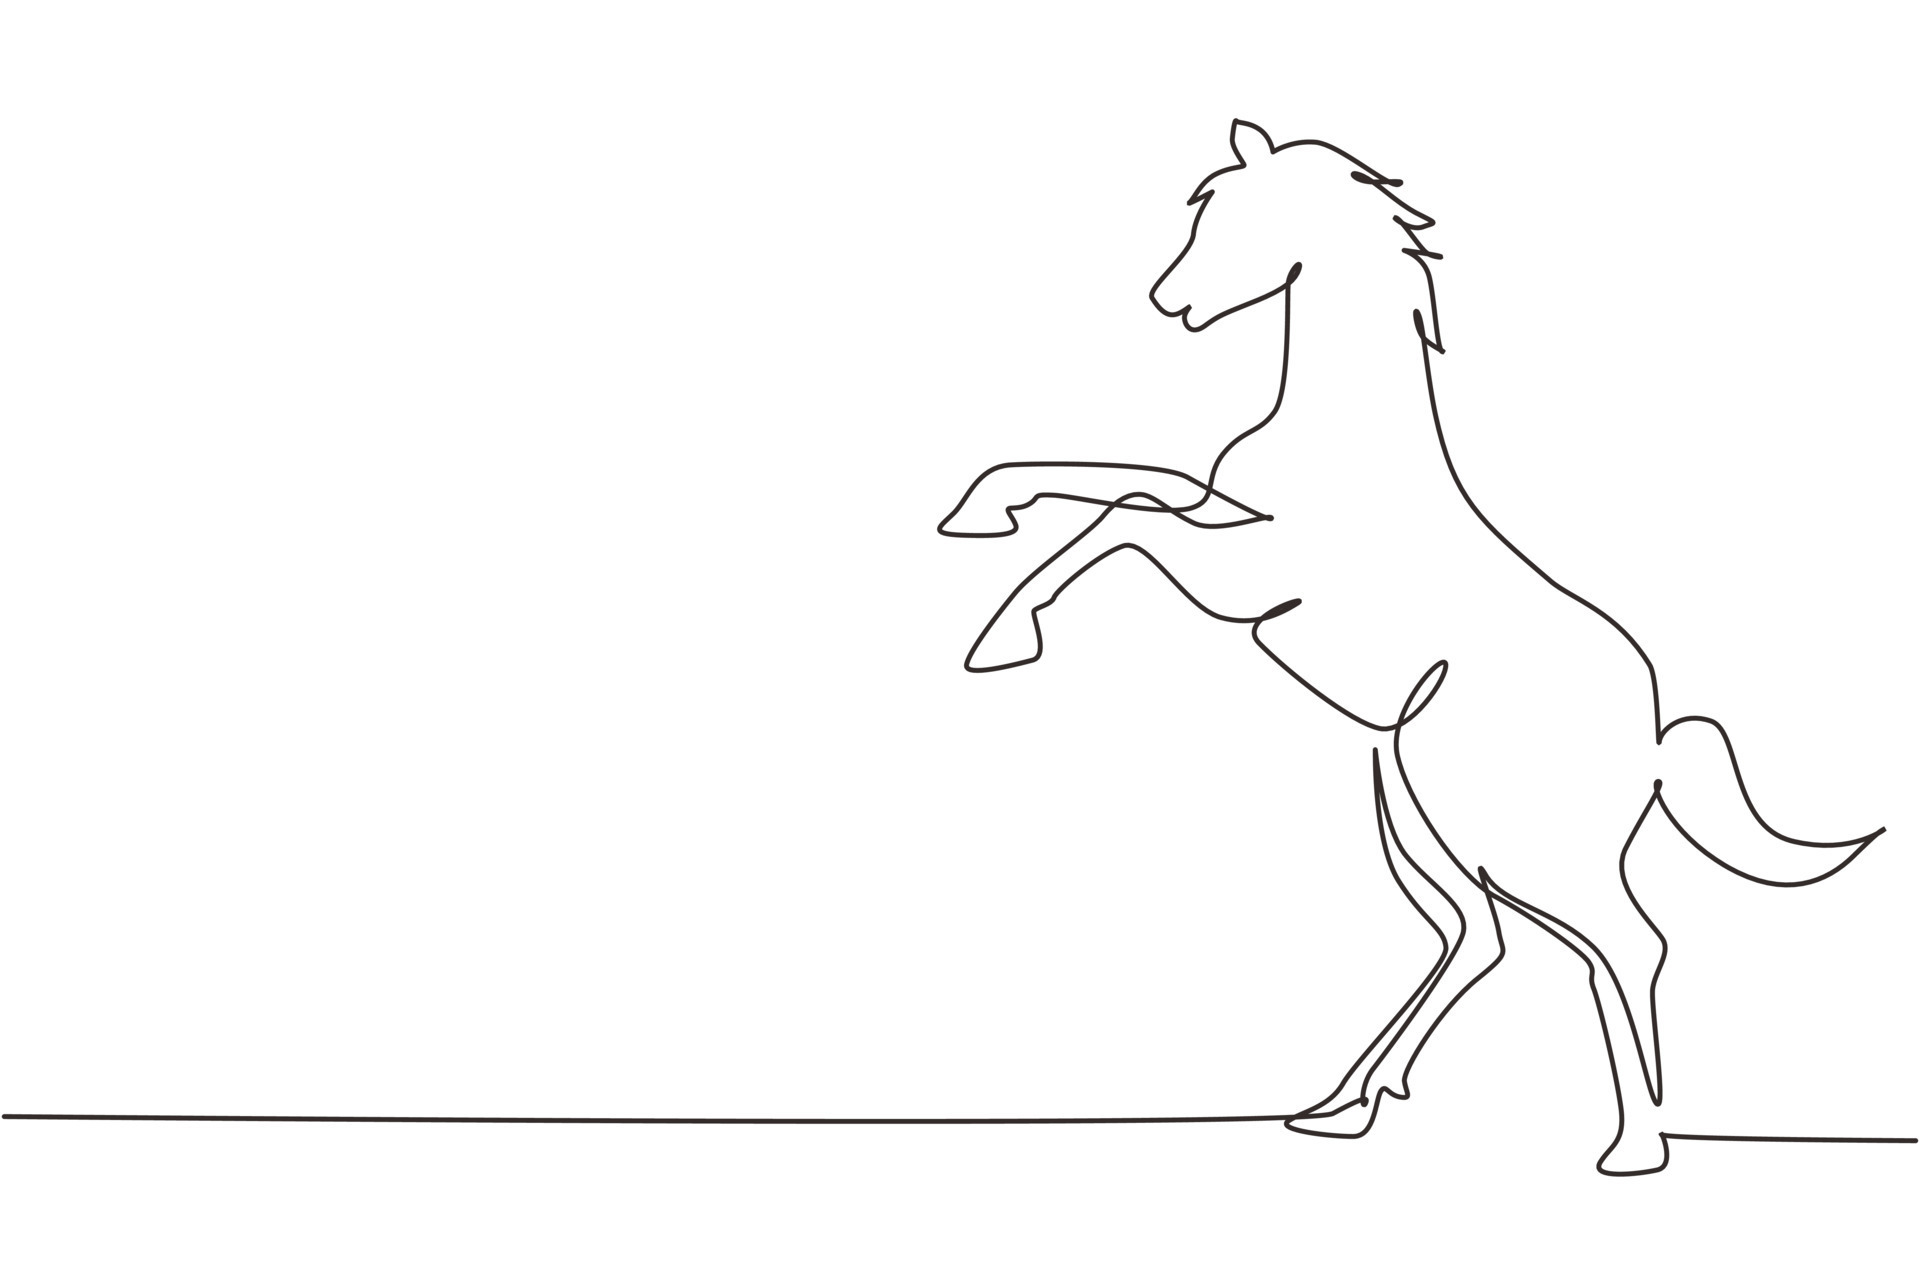 único desenho de uma linha, o cavalo branco orgulhoso anda graciosamente  com o casco dianteiro para a frente. Mustang selvagem galopa na natureza  livre. mascote animal forte. vetor gráfico de design de